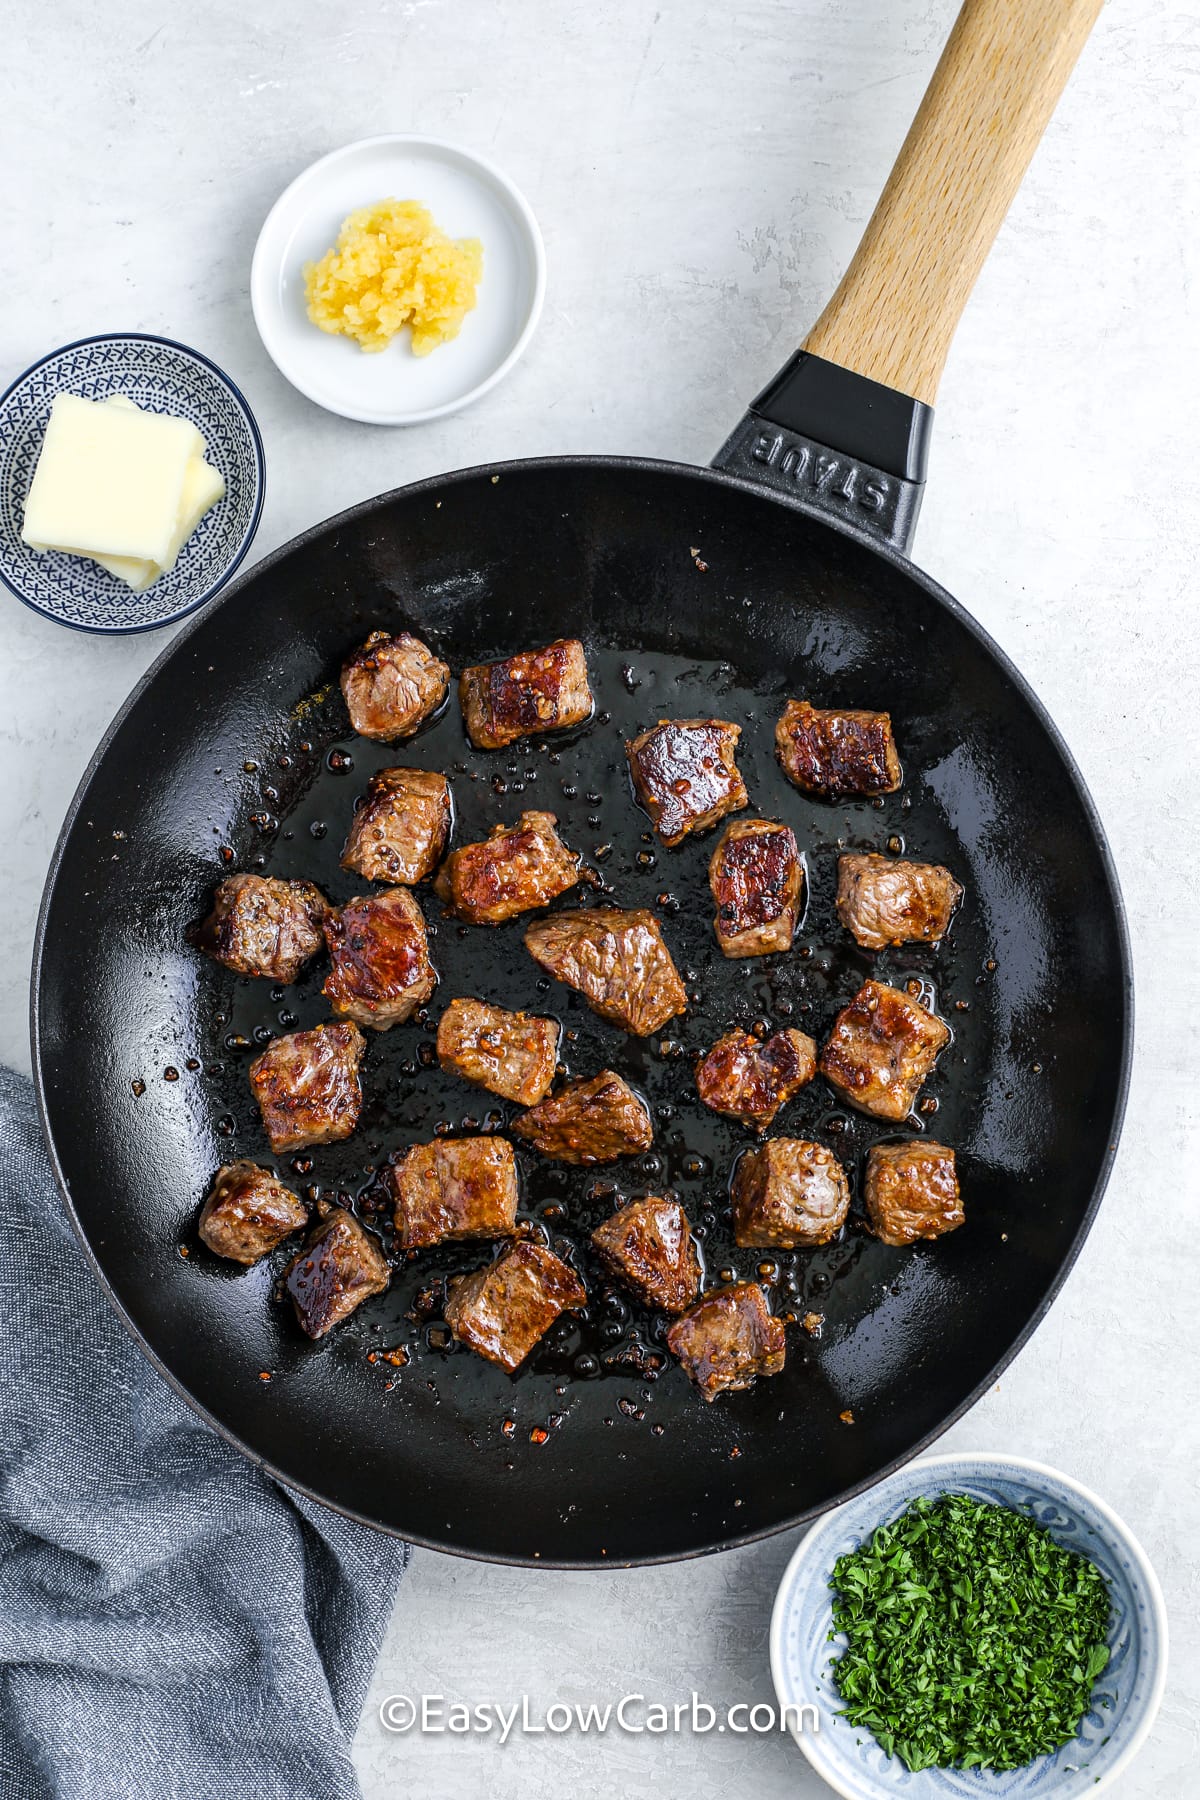 garlic steak bites cooking in a pan